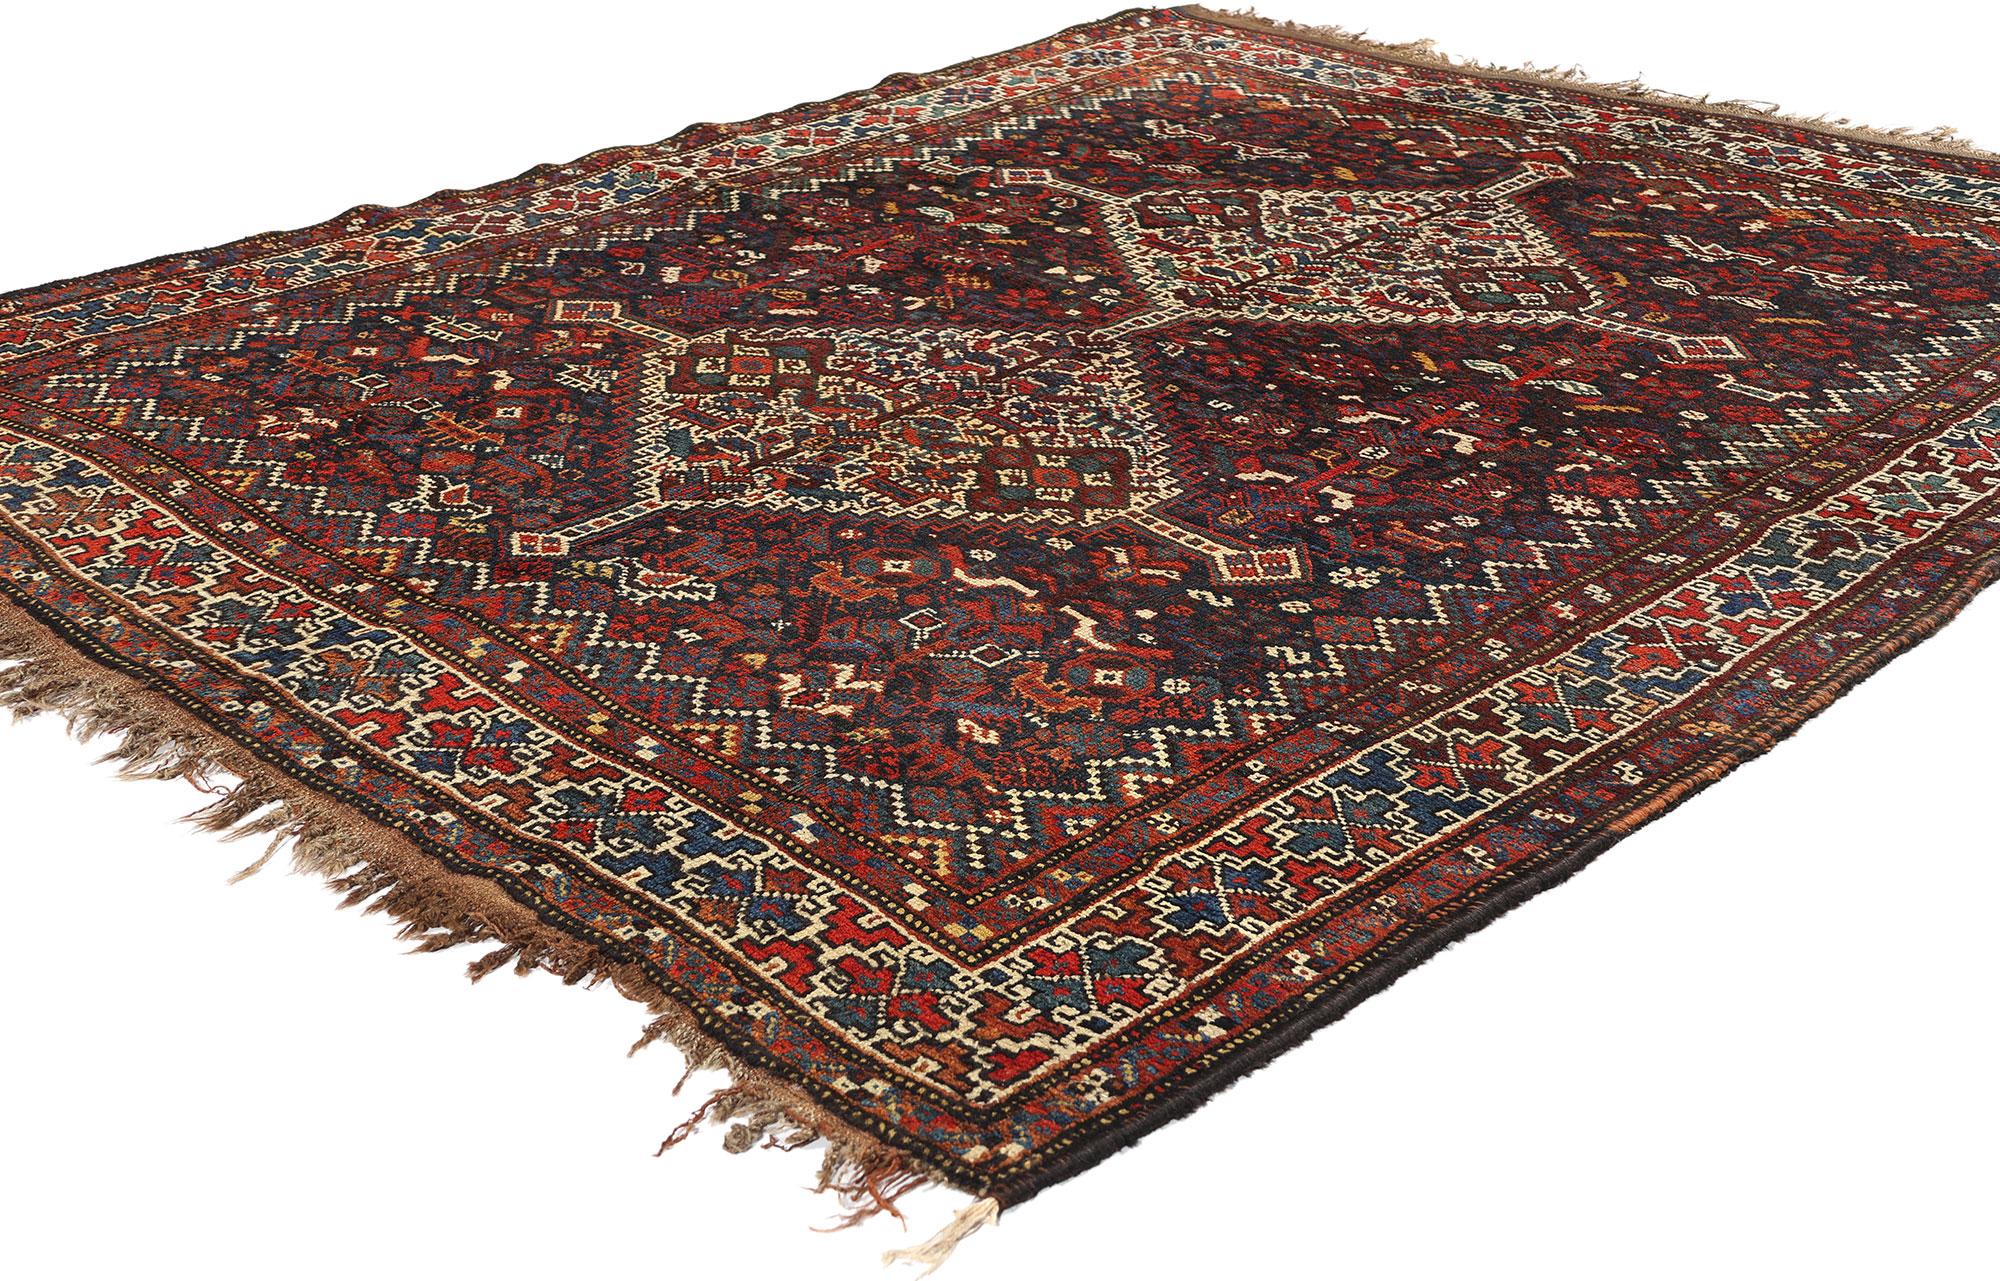 78179 Tapis ancien persan Shiraz, 05'06 x 06'07. Les tapis persans de Chiraz sont un type de tapis persan originaire des villages situés autour de la ville de Chiraz, dans la province iranienne de Fars. Ces tapis sont réputés pour leurs designs